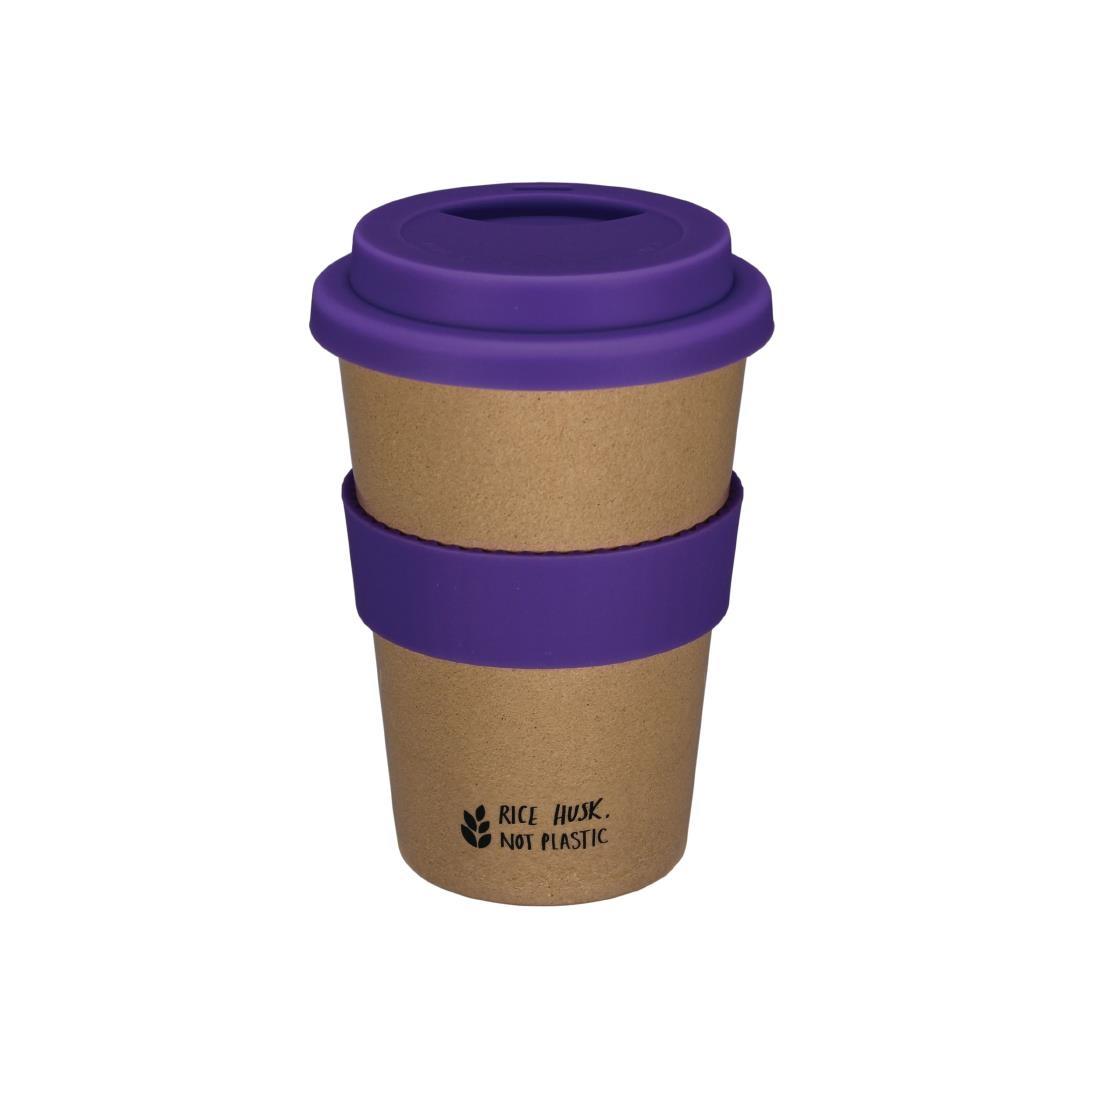 Huskup Rice Husk Compostable Reusable Coffee Cup Ultra Violet 14oz - DB632  - 1